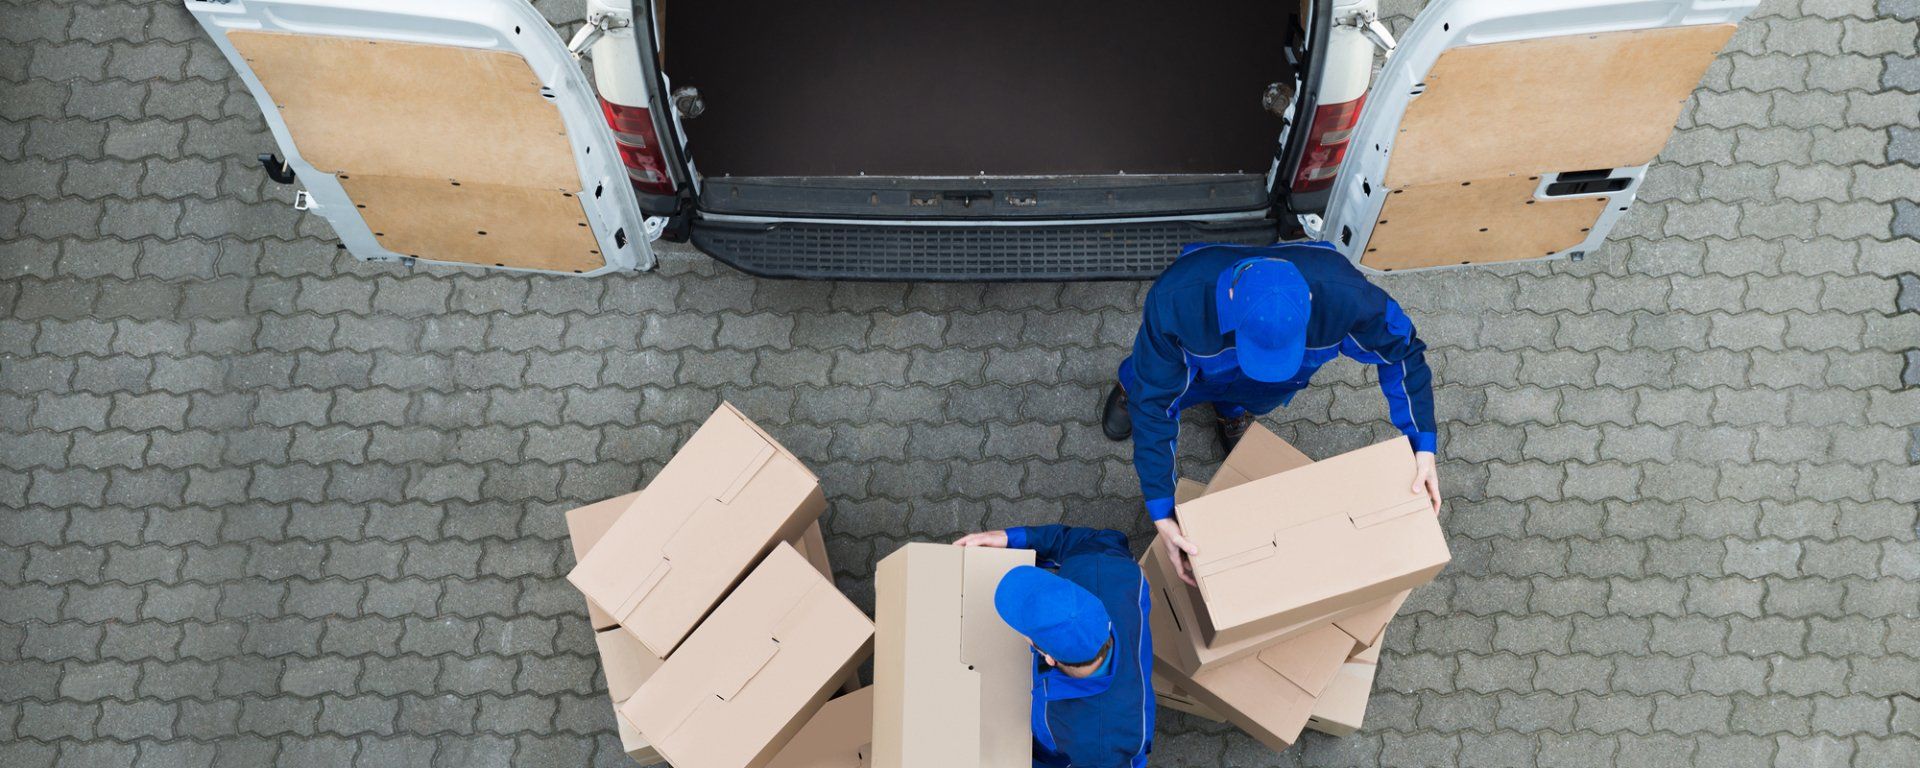 Loading storage boxes onto a van.